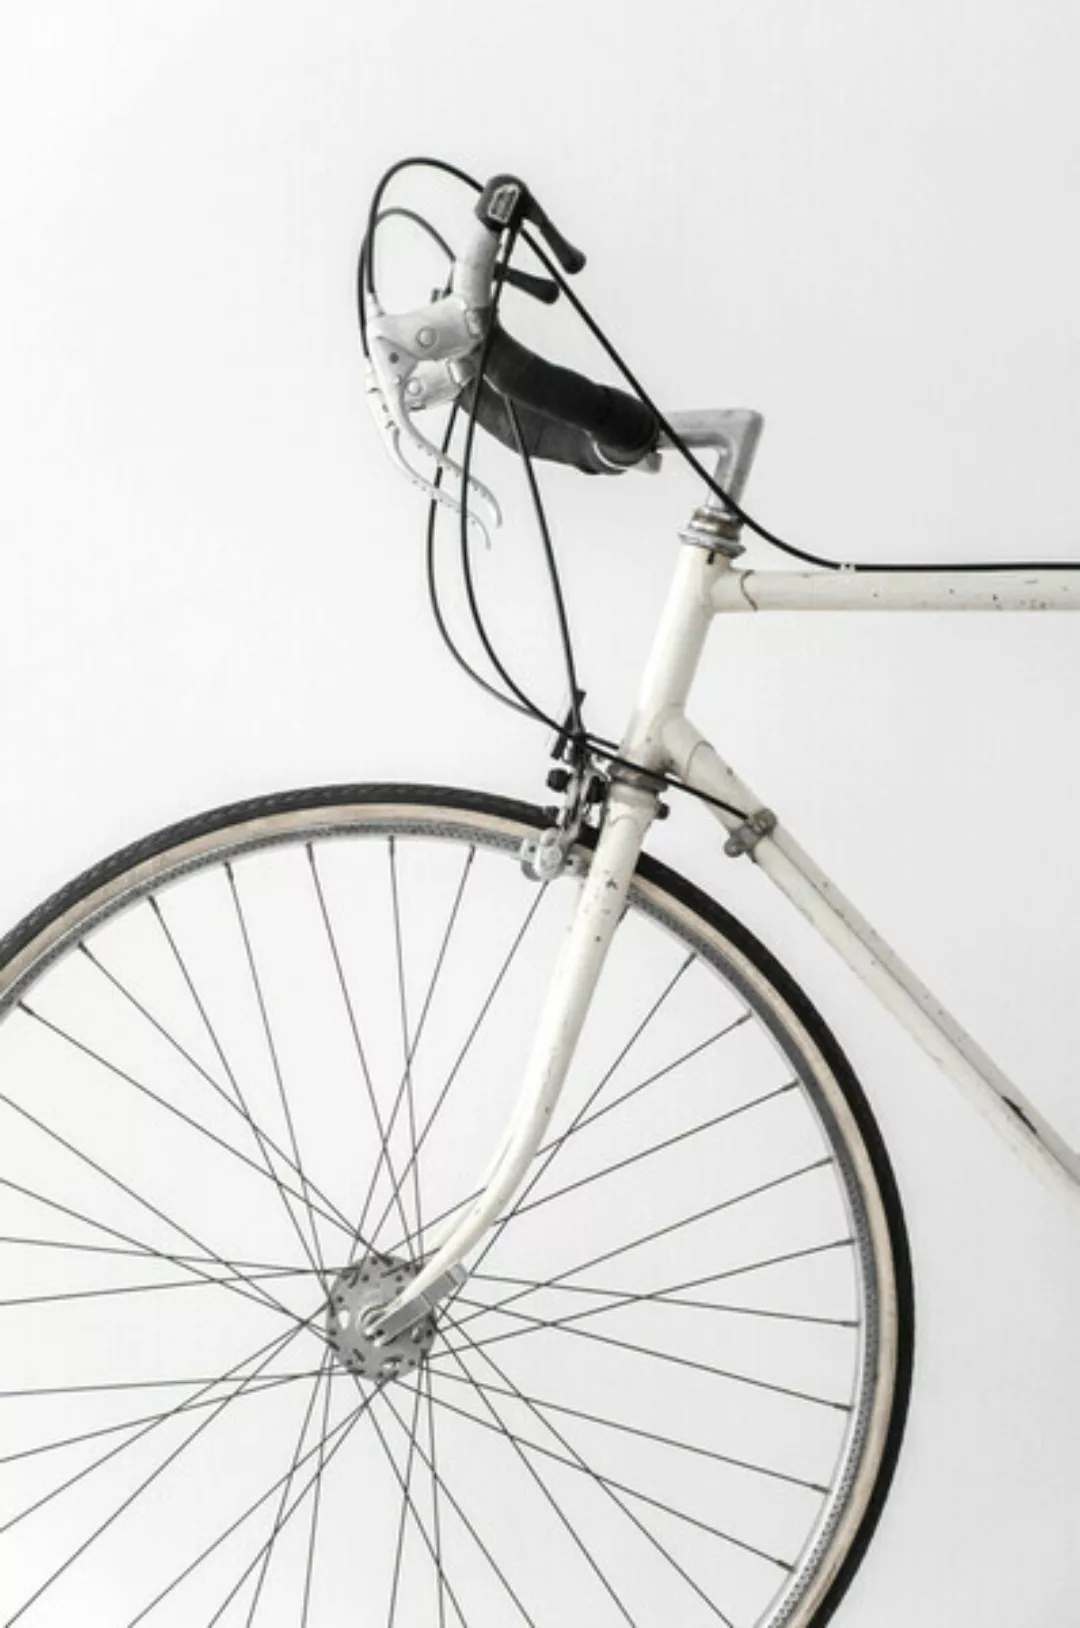 Poster / Leinwandbild - White Minimal Bicycle Love günstig online kaufen